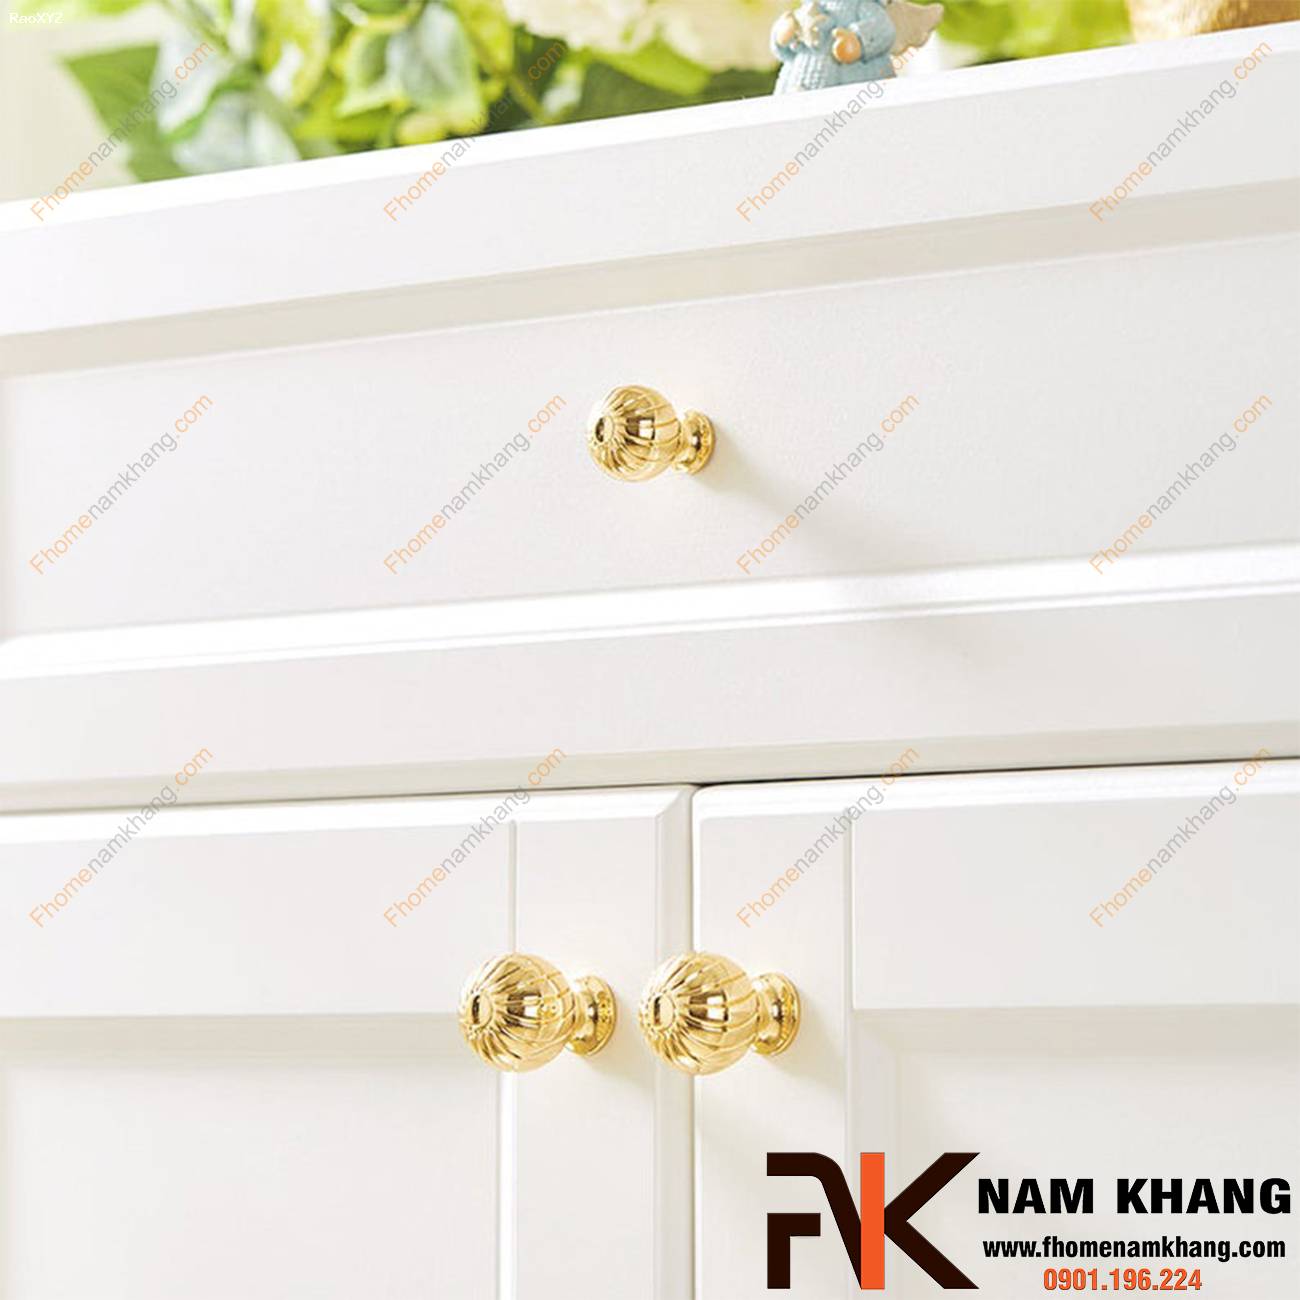 Núm cửa tủ cao cấp màu vàng bóng NK441-24K | F-home NamKhang